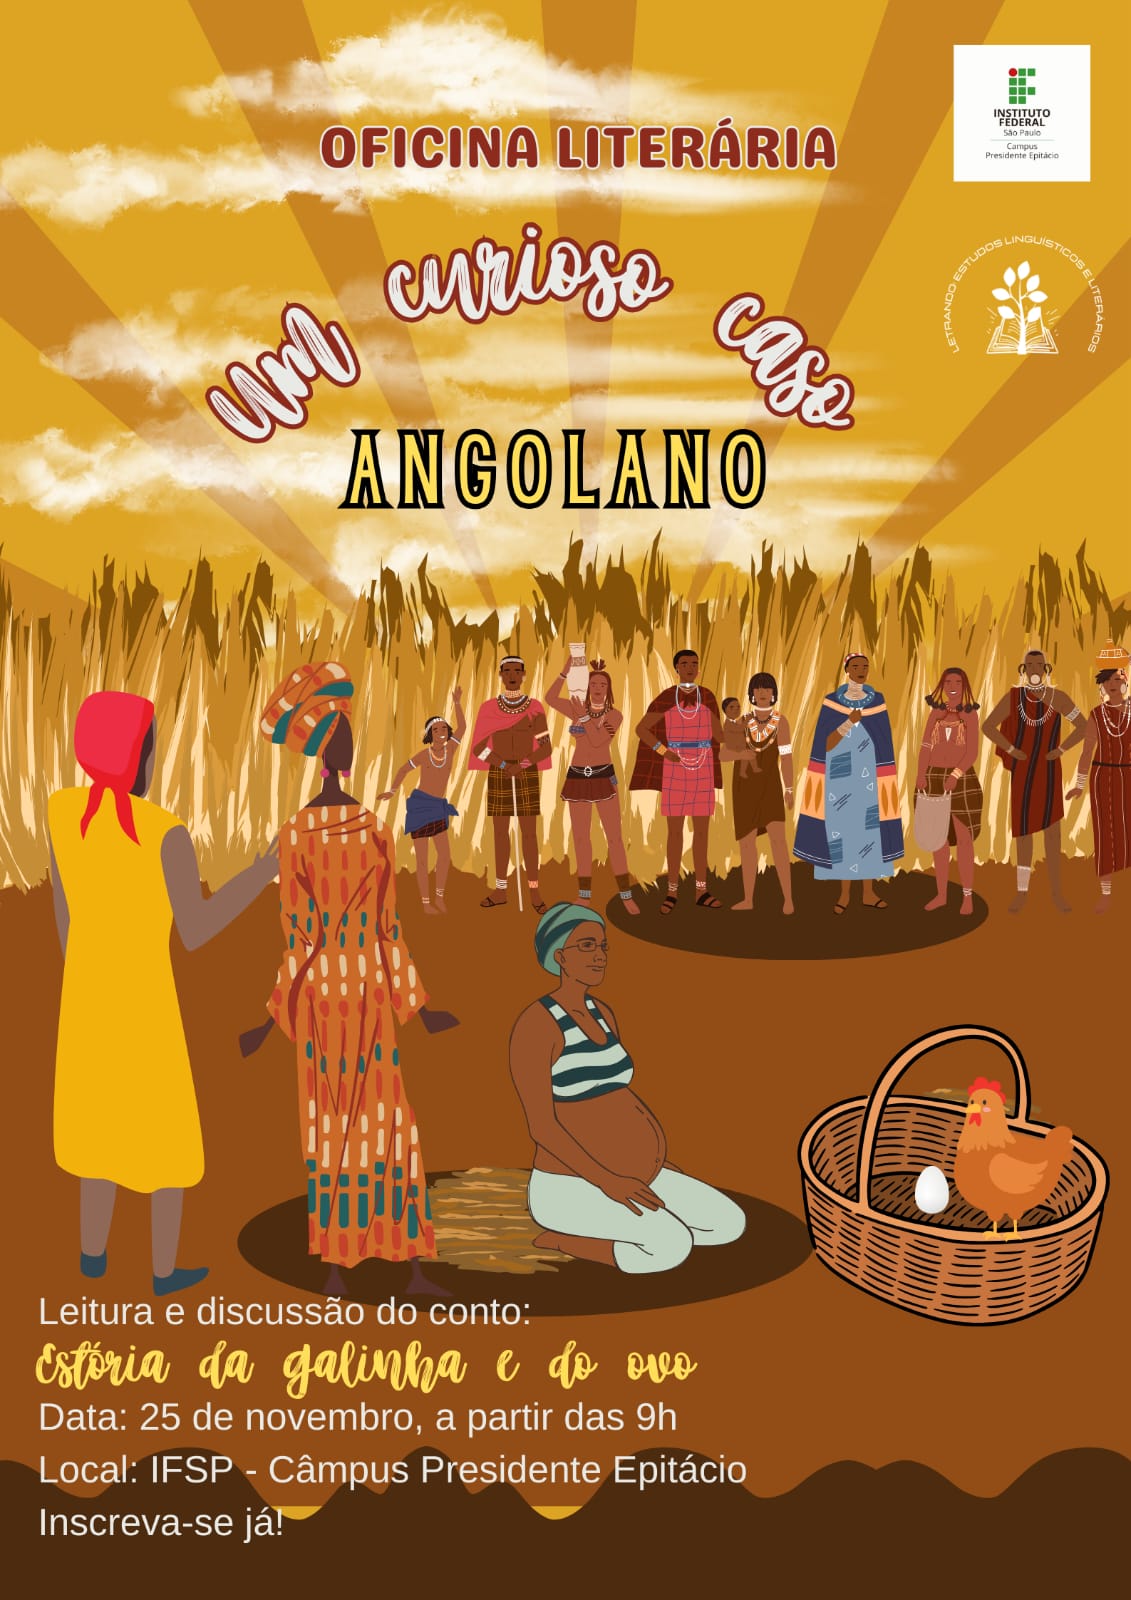 Foto de Oficina Literária: Um curioso caso angolano. Leitura e discussão do conto: Estória da galinha e do ovo